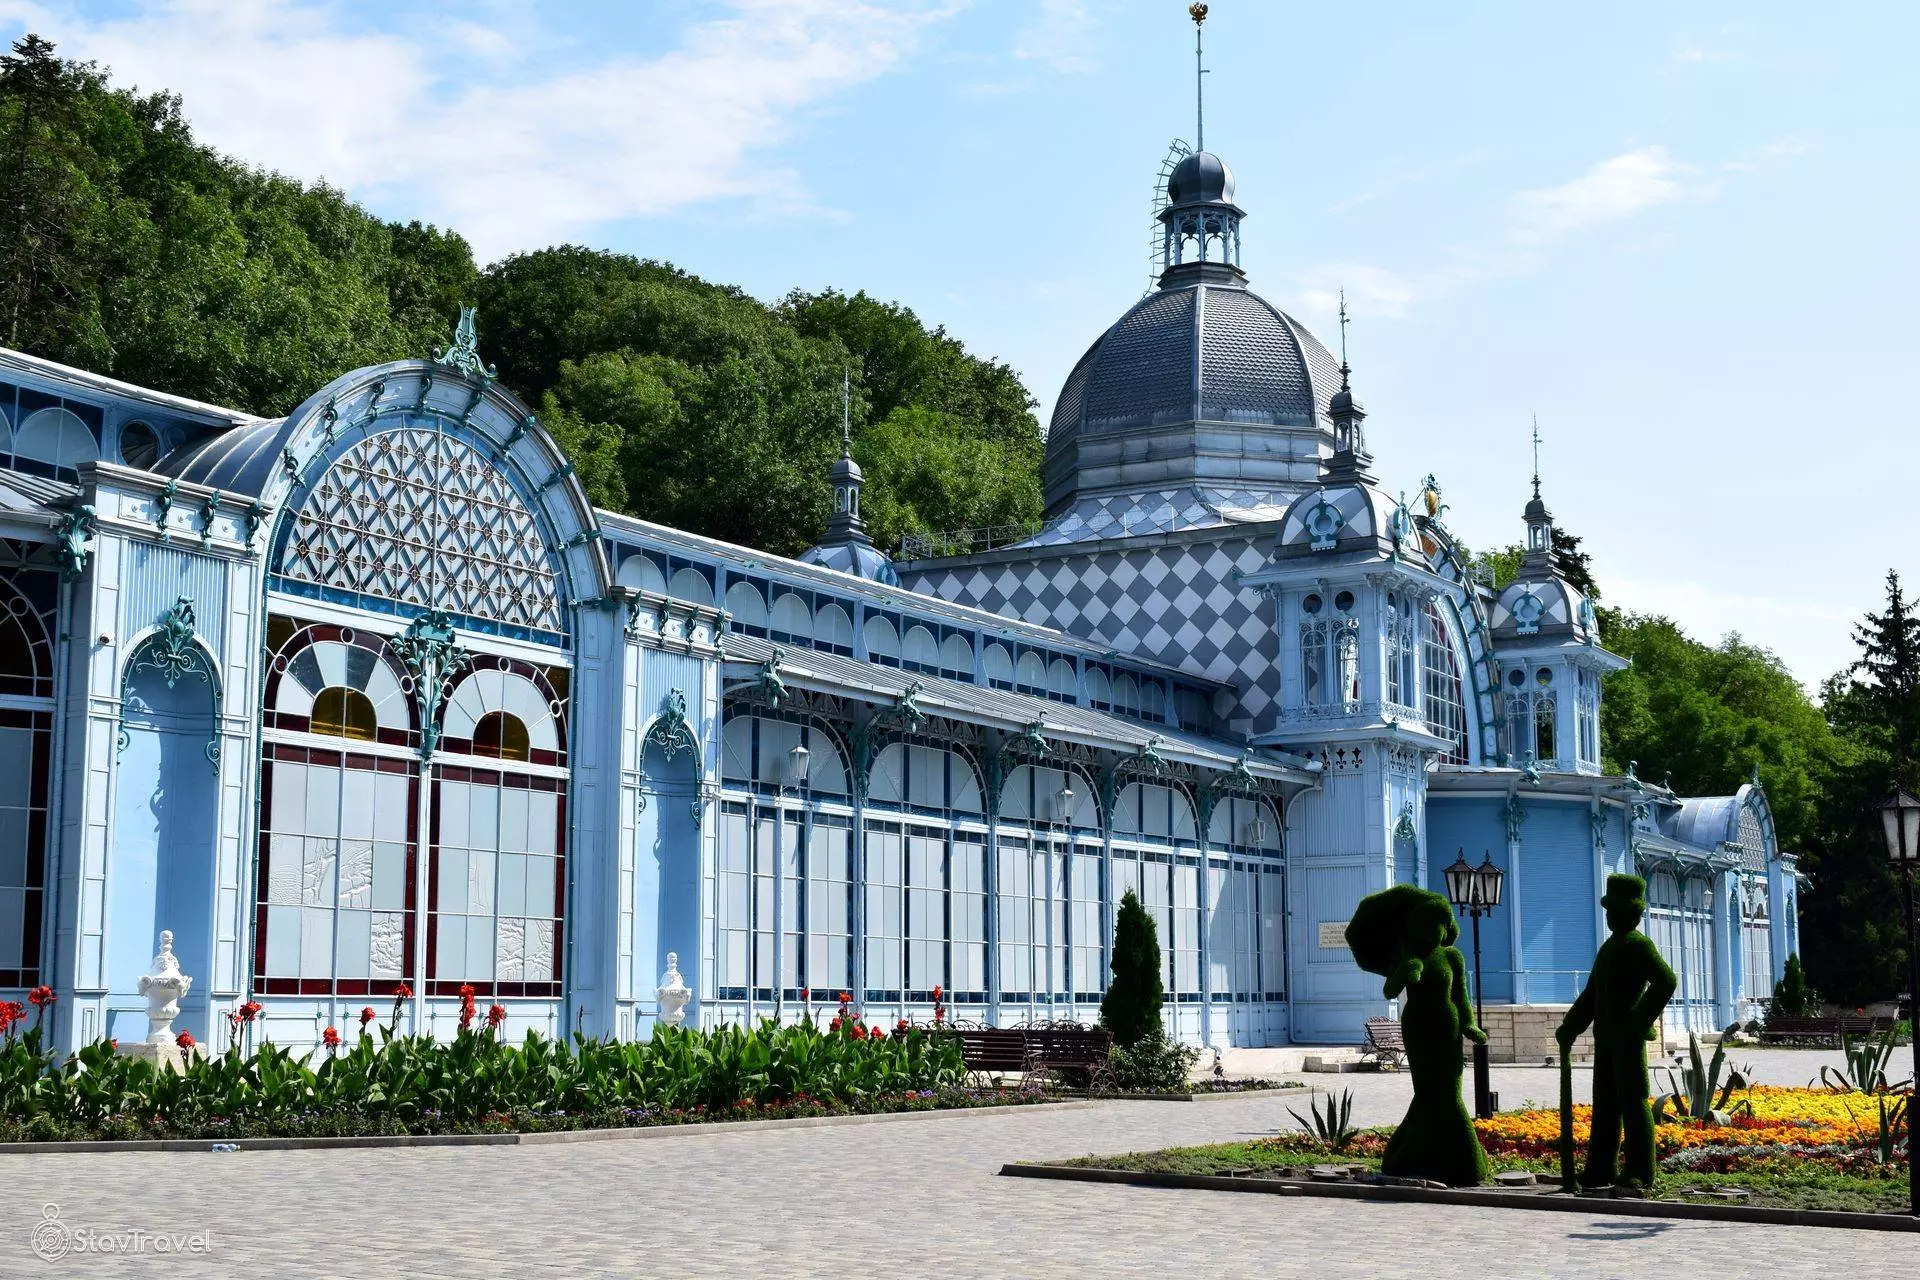 Достопримечательности пушкино и его окрестностей ждут туристов